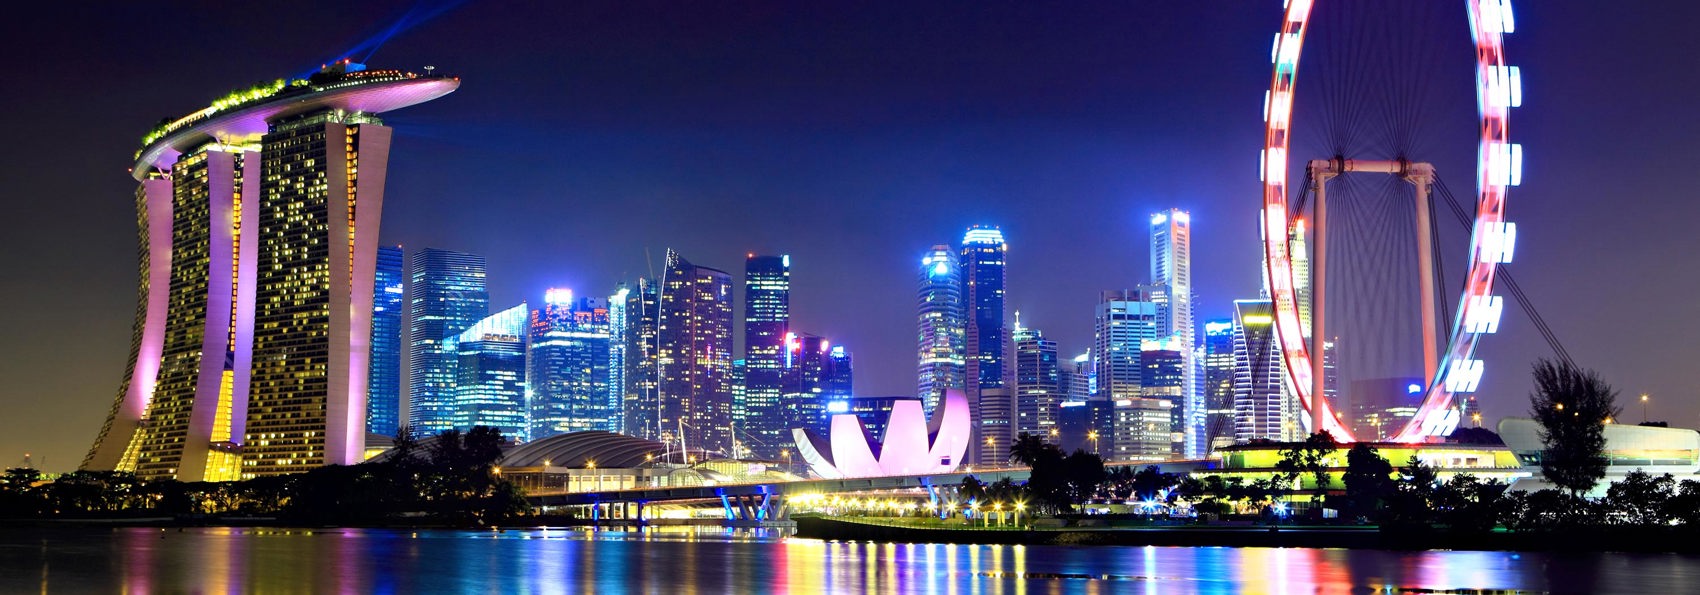 singapore - singapore_skyline_01